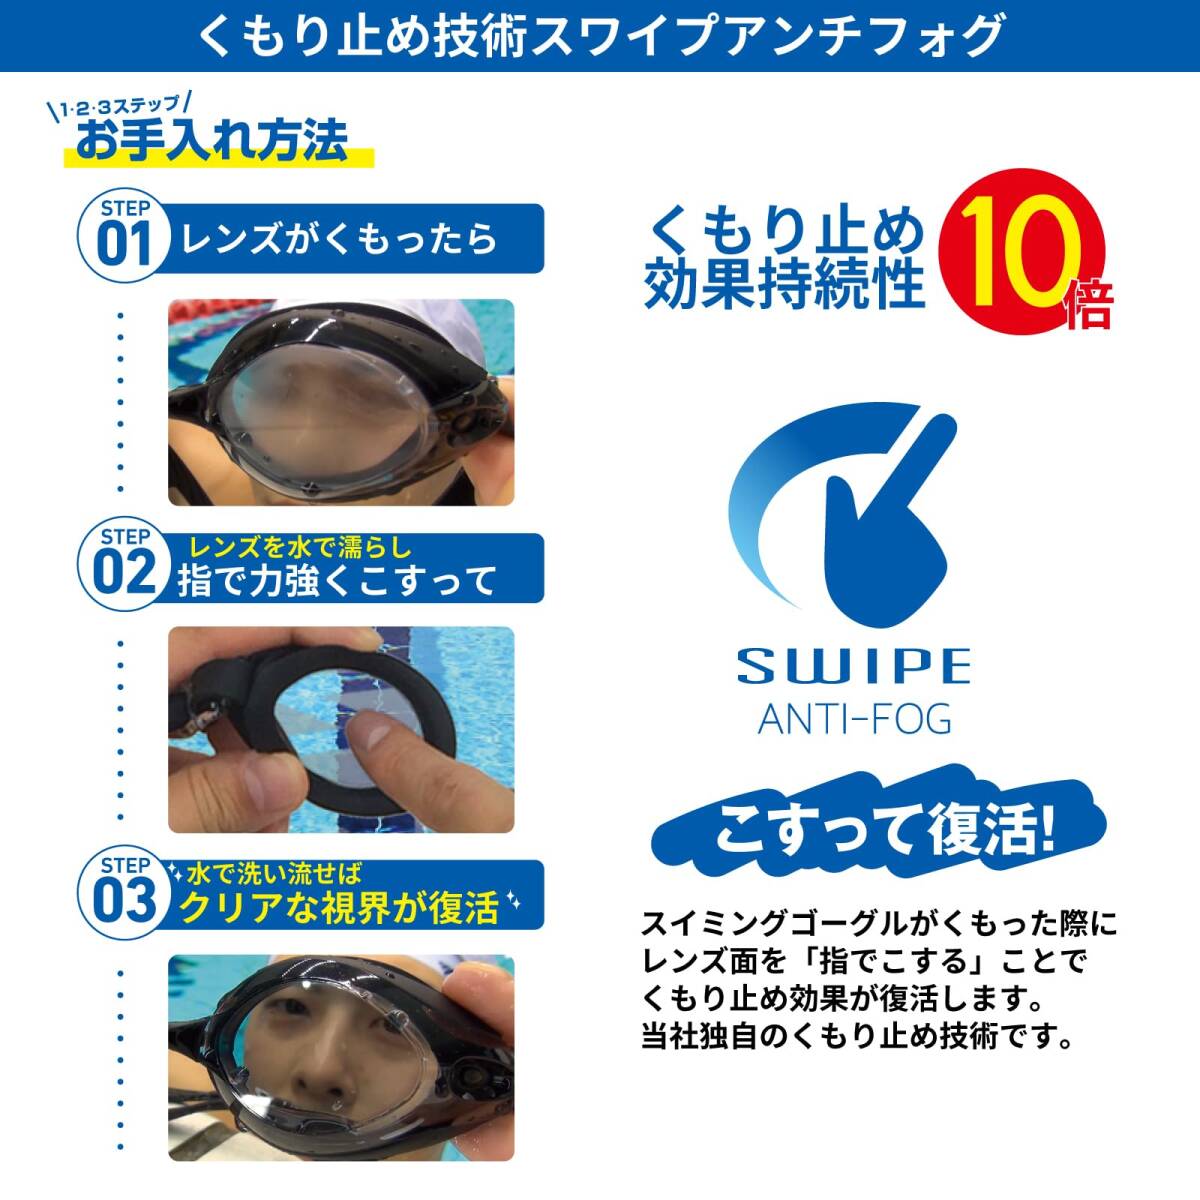 [ビュー] スイミングゴーグル ミラータイプ 日本製 フィットネス 大人用 UVカット くもり止め機能SWIPE搭載 簡単装着モデル ブラック_画像4